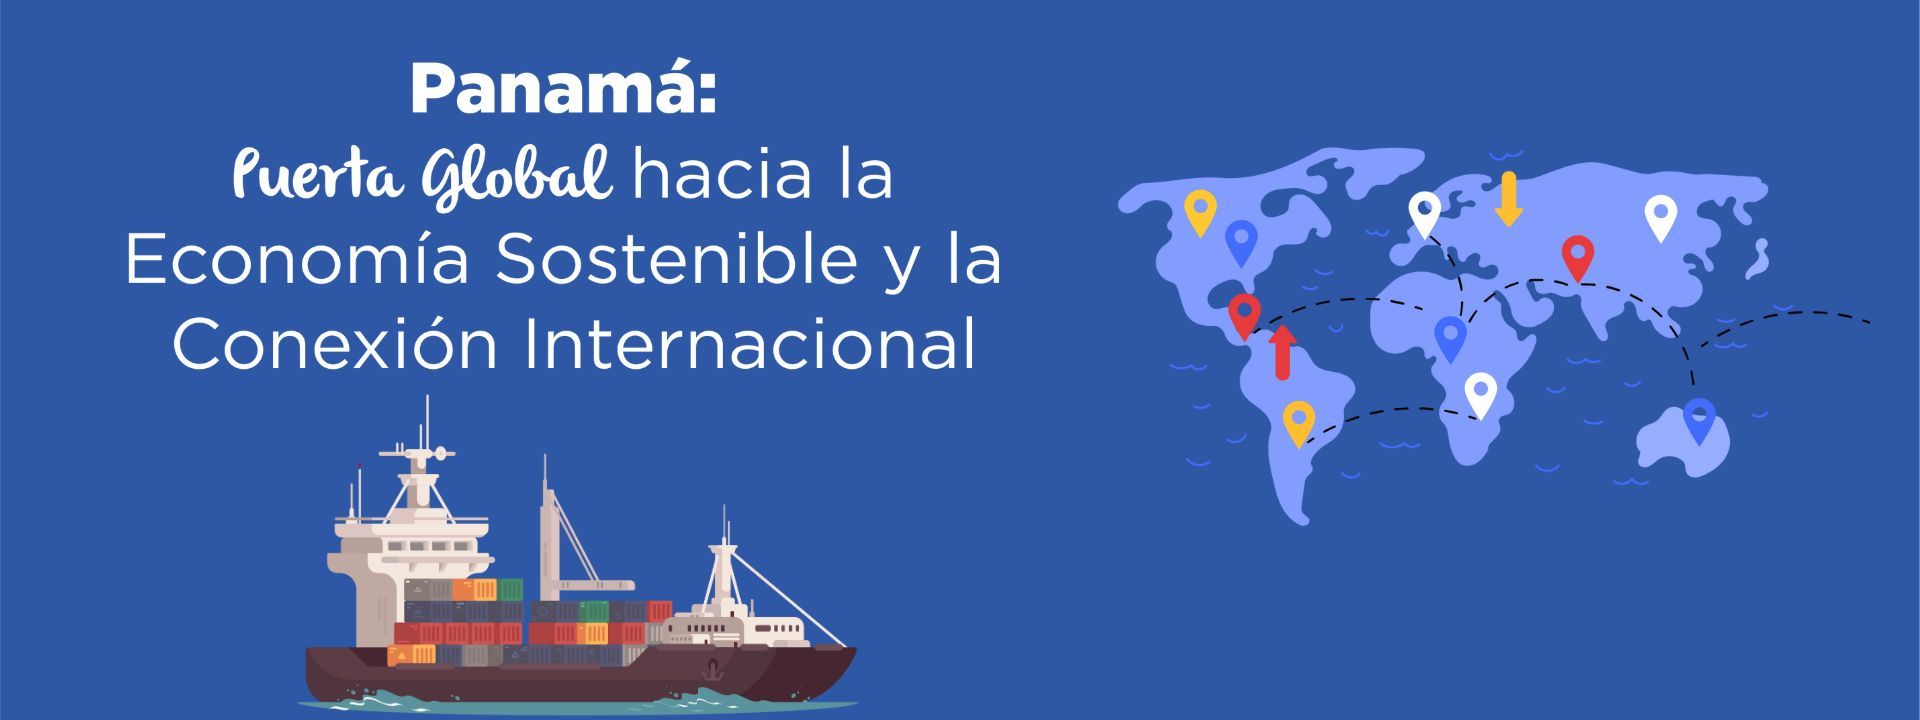 Panamá: Puerta Global hacia la Economía Sostenible y la Conexión Internacional